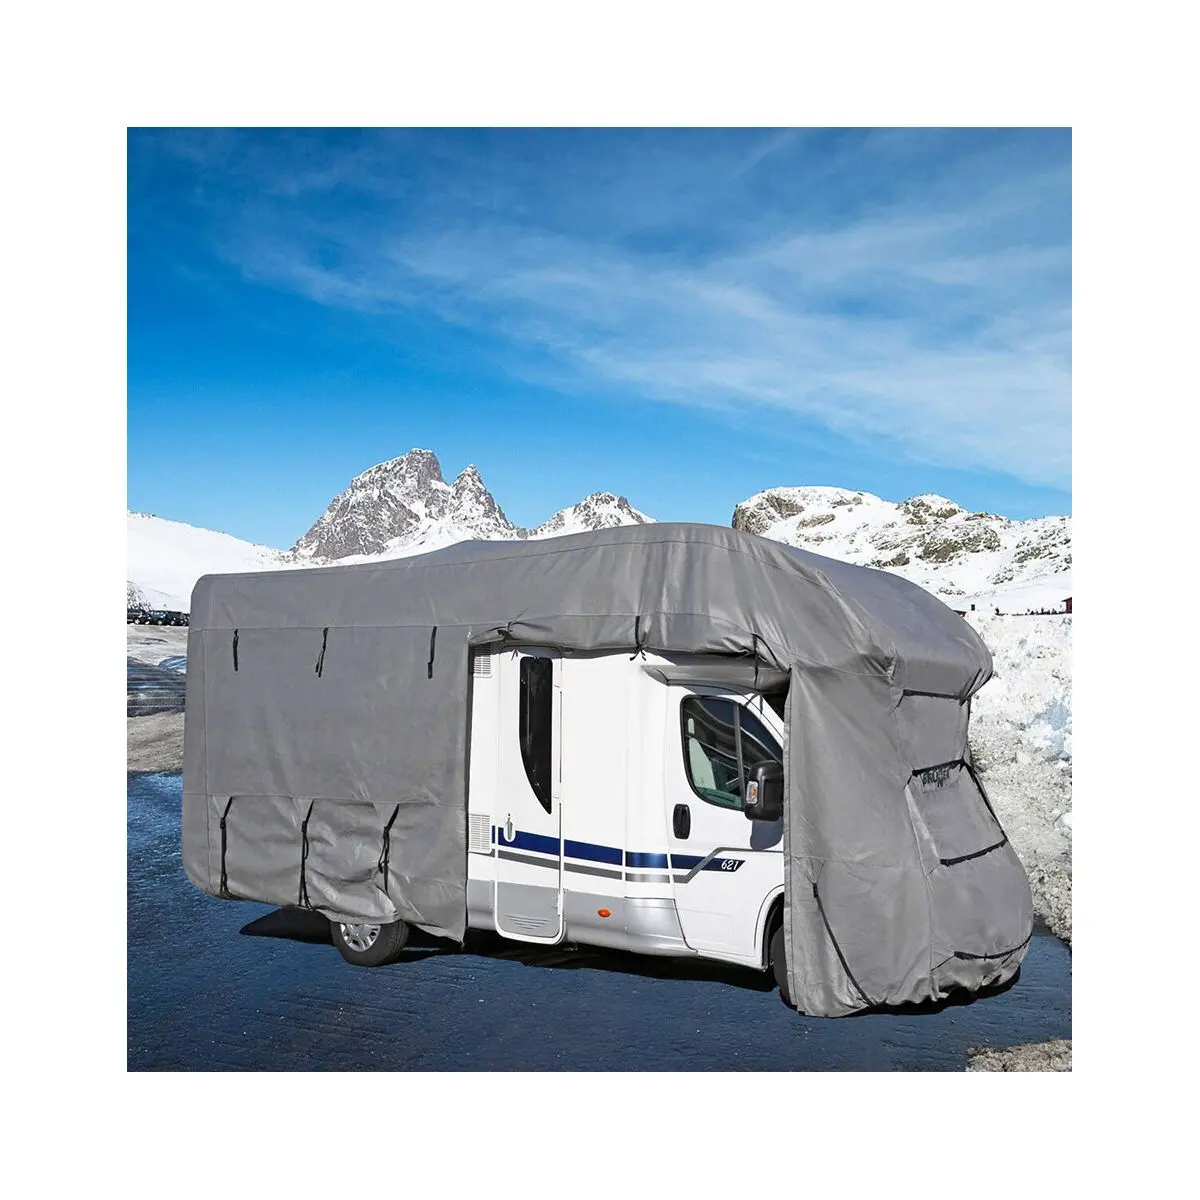 Husa de protectie pentru caravana 6M, 500-550 x 240 x 270 cm